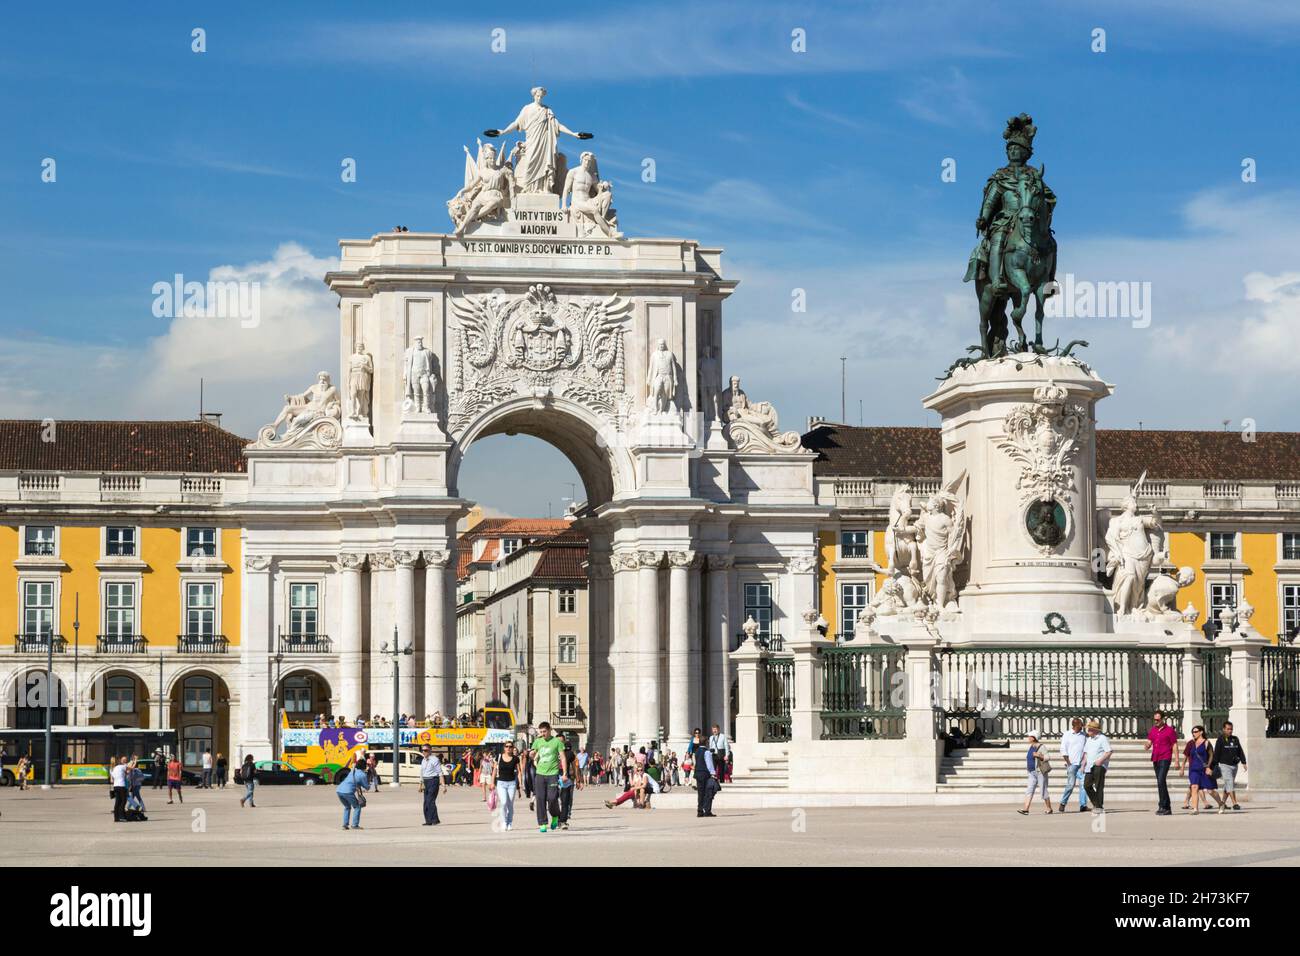 Lisbonne, Portugal.Praca do Comercio, ou Commerce Square.Il est également connu sous le nom de Terreiro do Paco, ou place du Palais après le Palais Royal qui se tenait t Banque D'Images